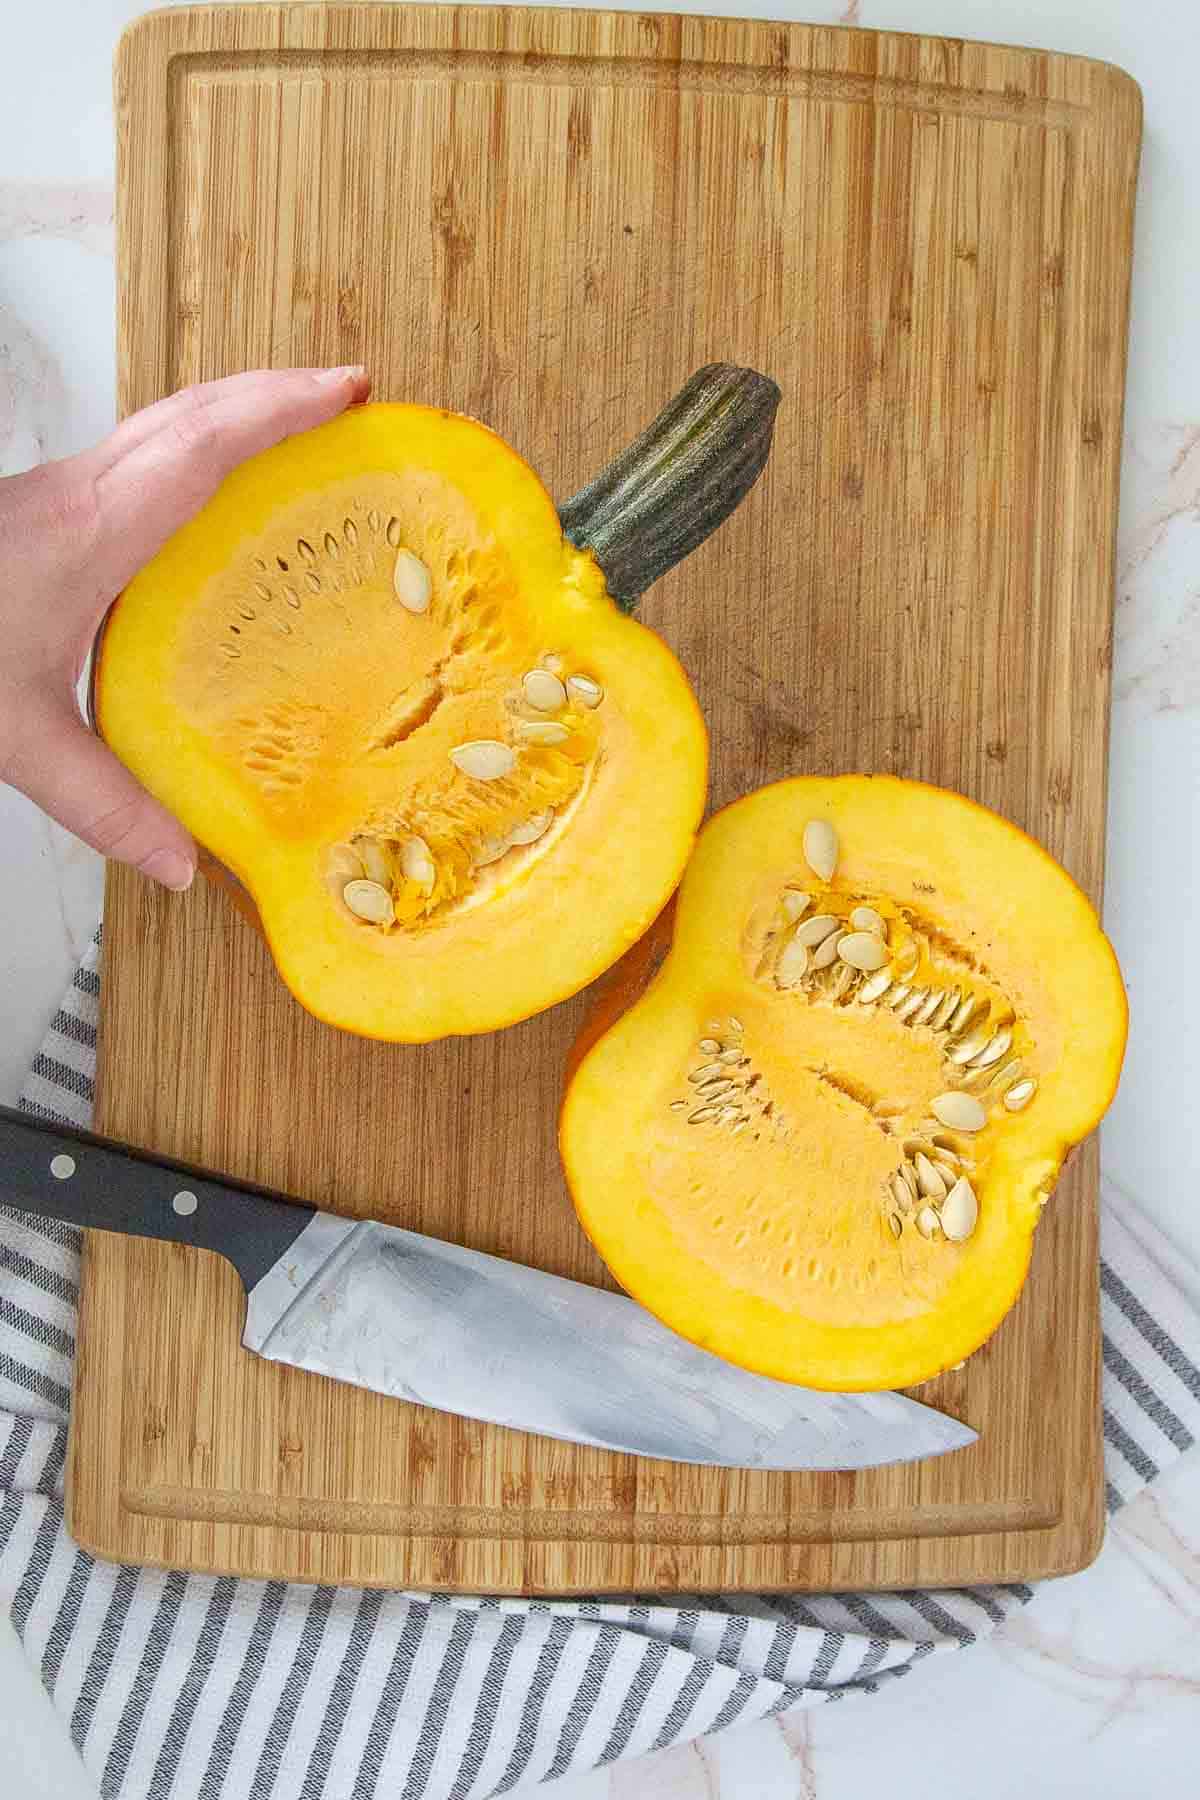 halved pie pumpkin on cutting board